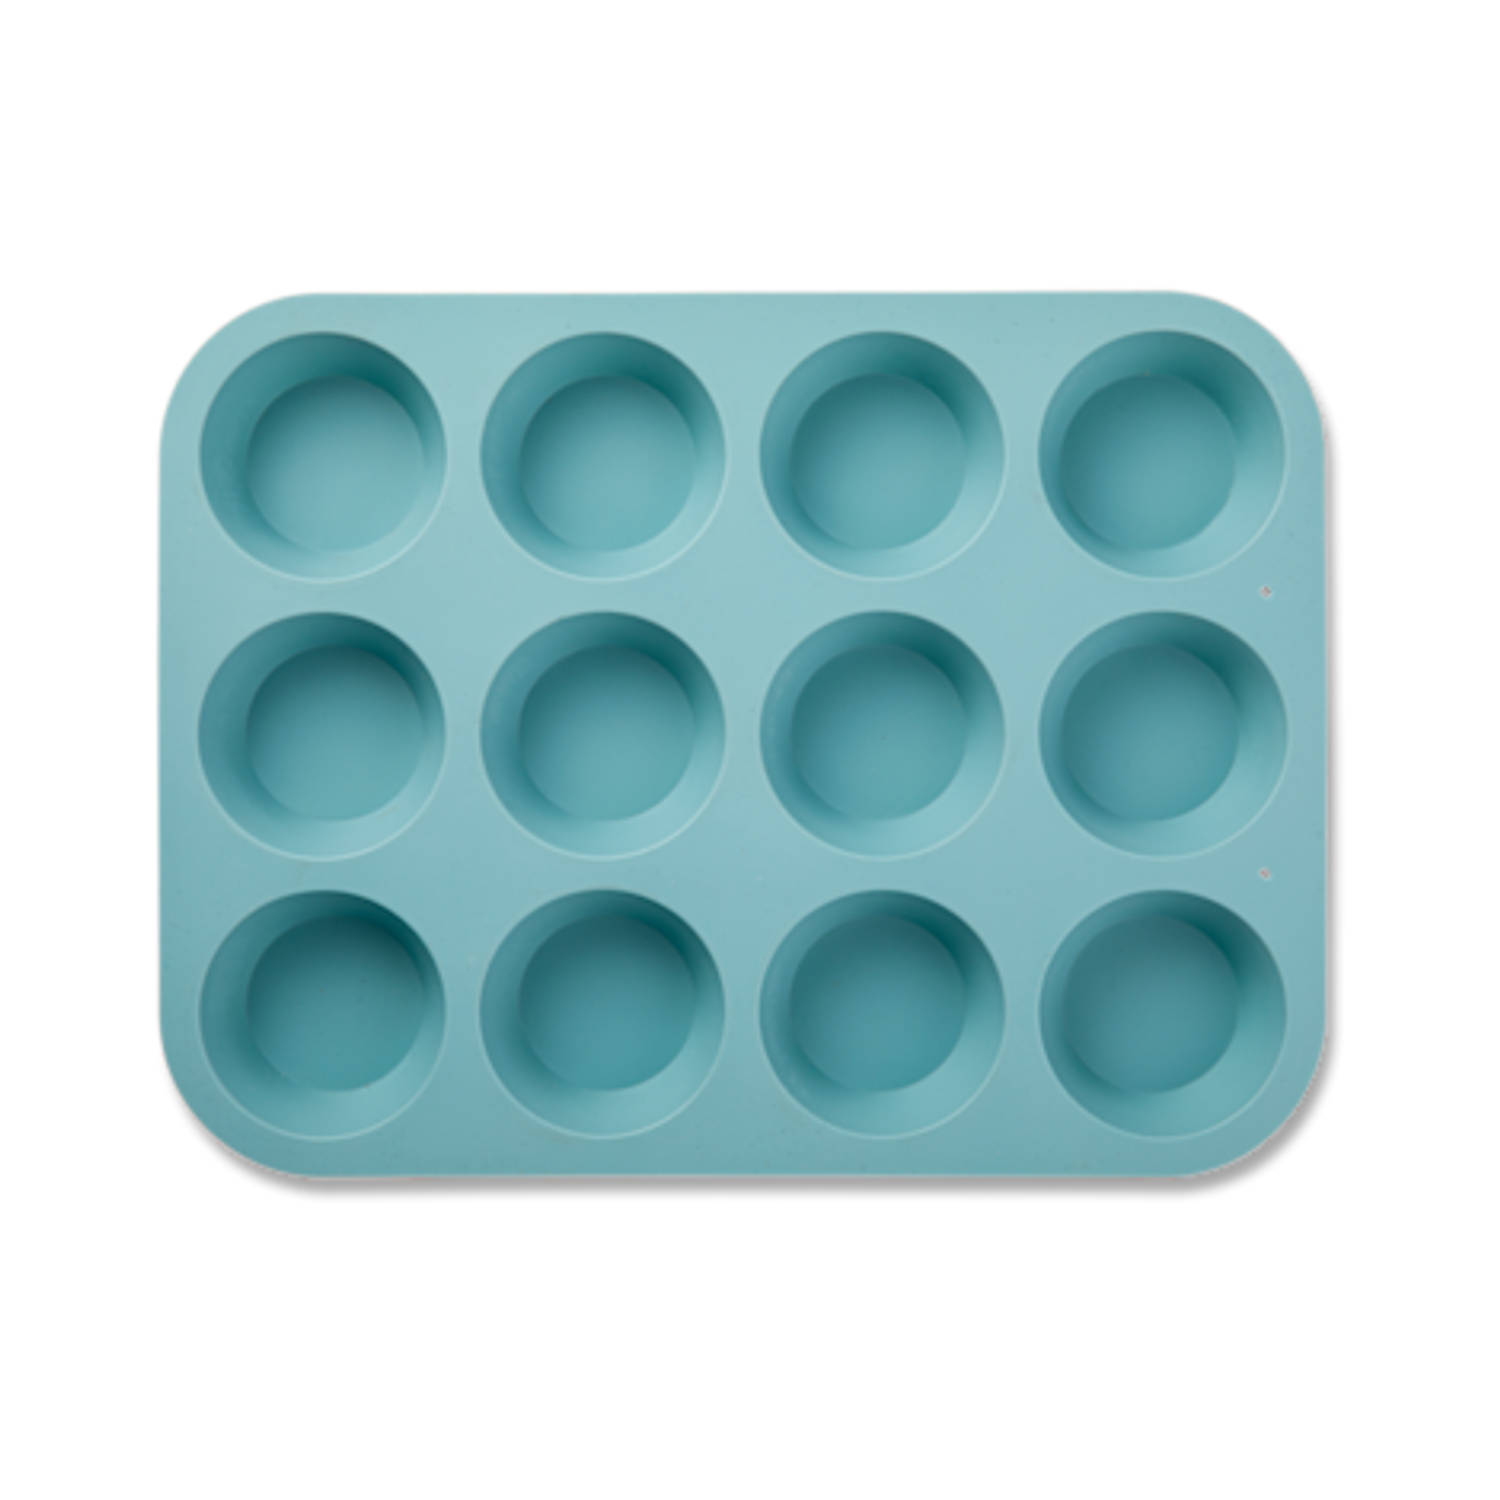 syndroom Nodig uit Aanvankelijk Blokker muffin bakvorm - siliconen - 12 stuks - blauw | Blokker